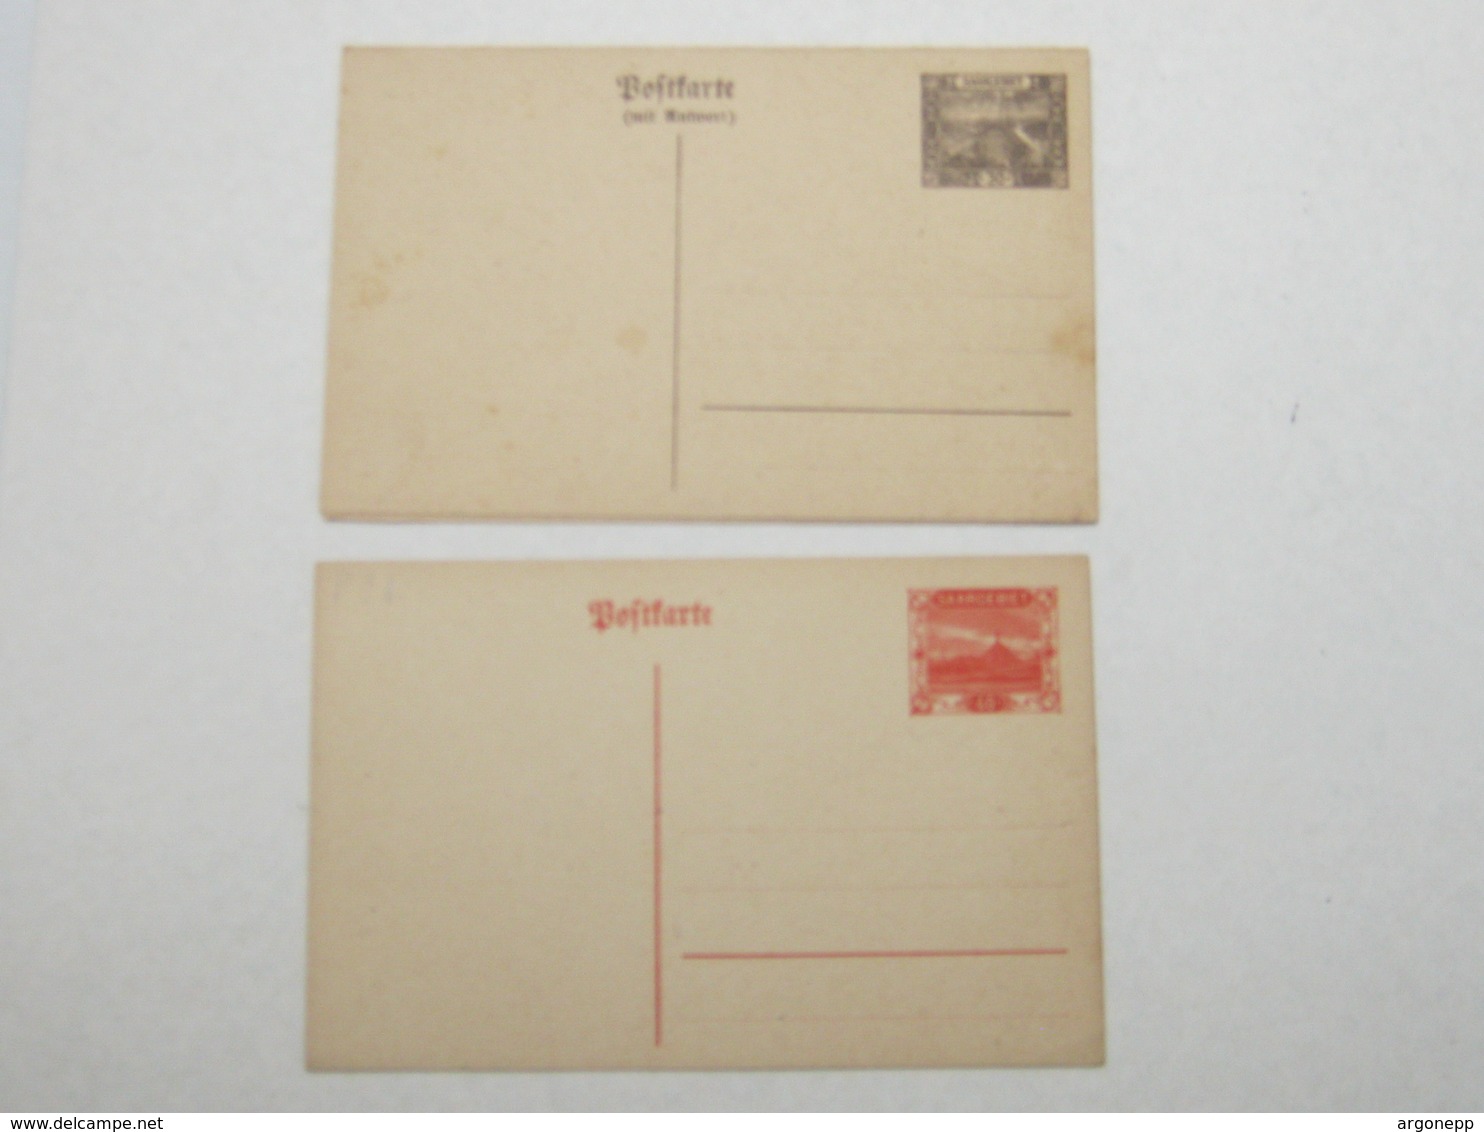 2 Ganzsachen Ungebraucht , 1 Mal Doppelkarte - Postal Stationery